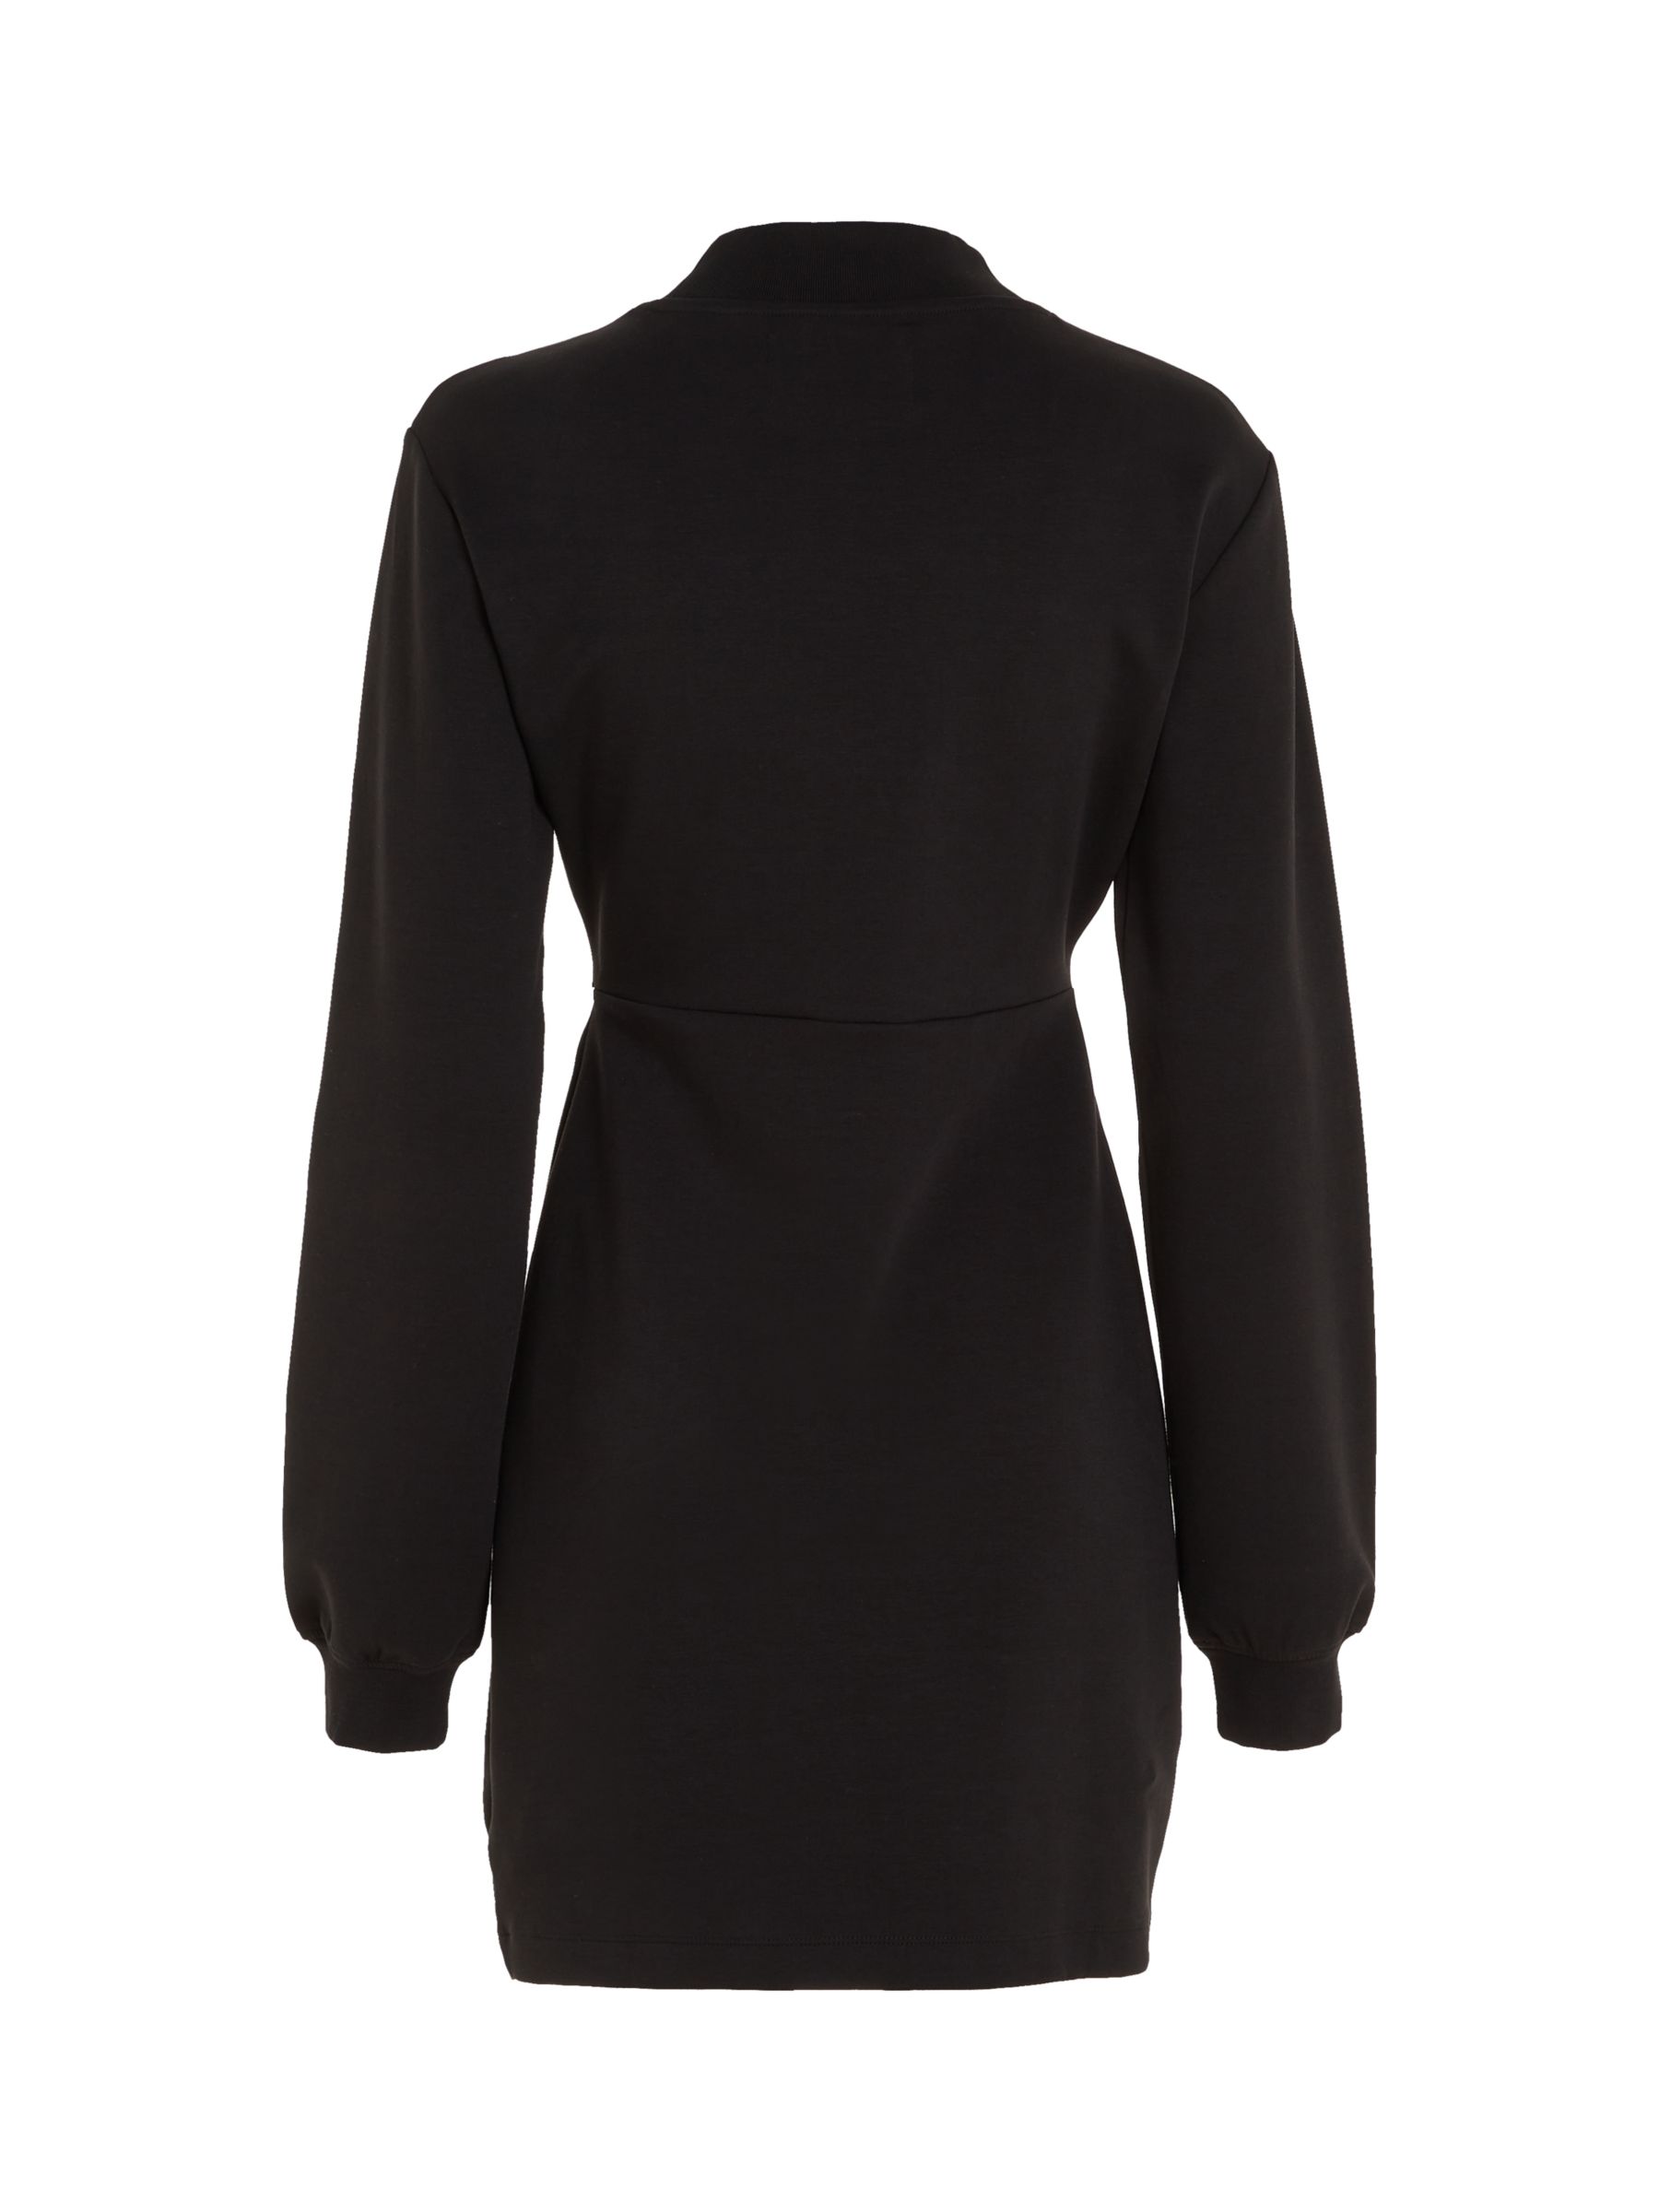 Calvin Klein Wrap Sweater Dress, Black, L